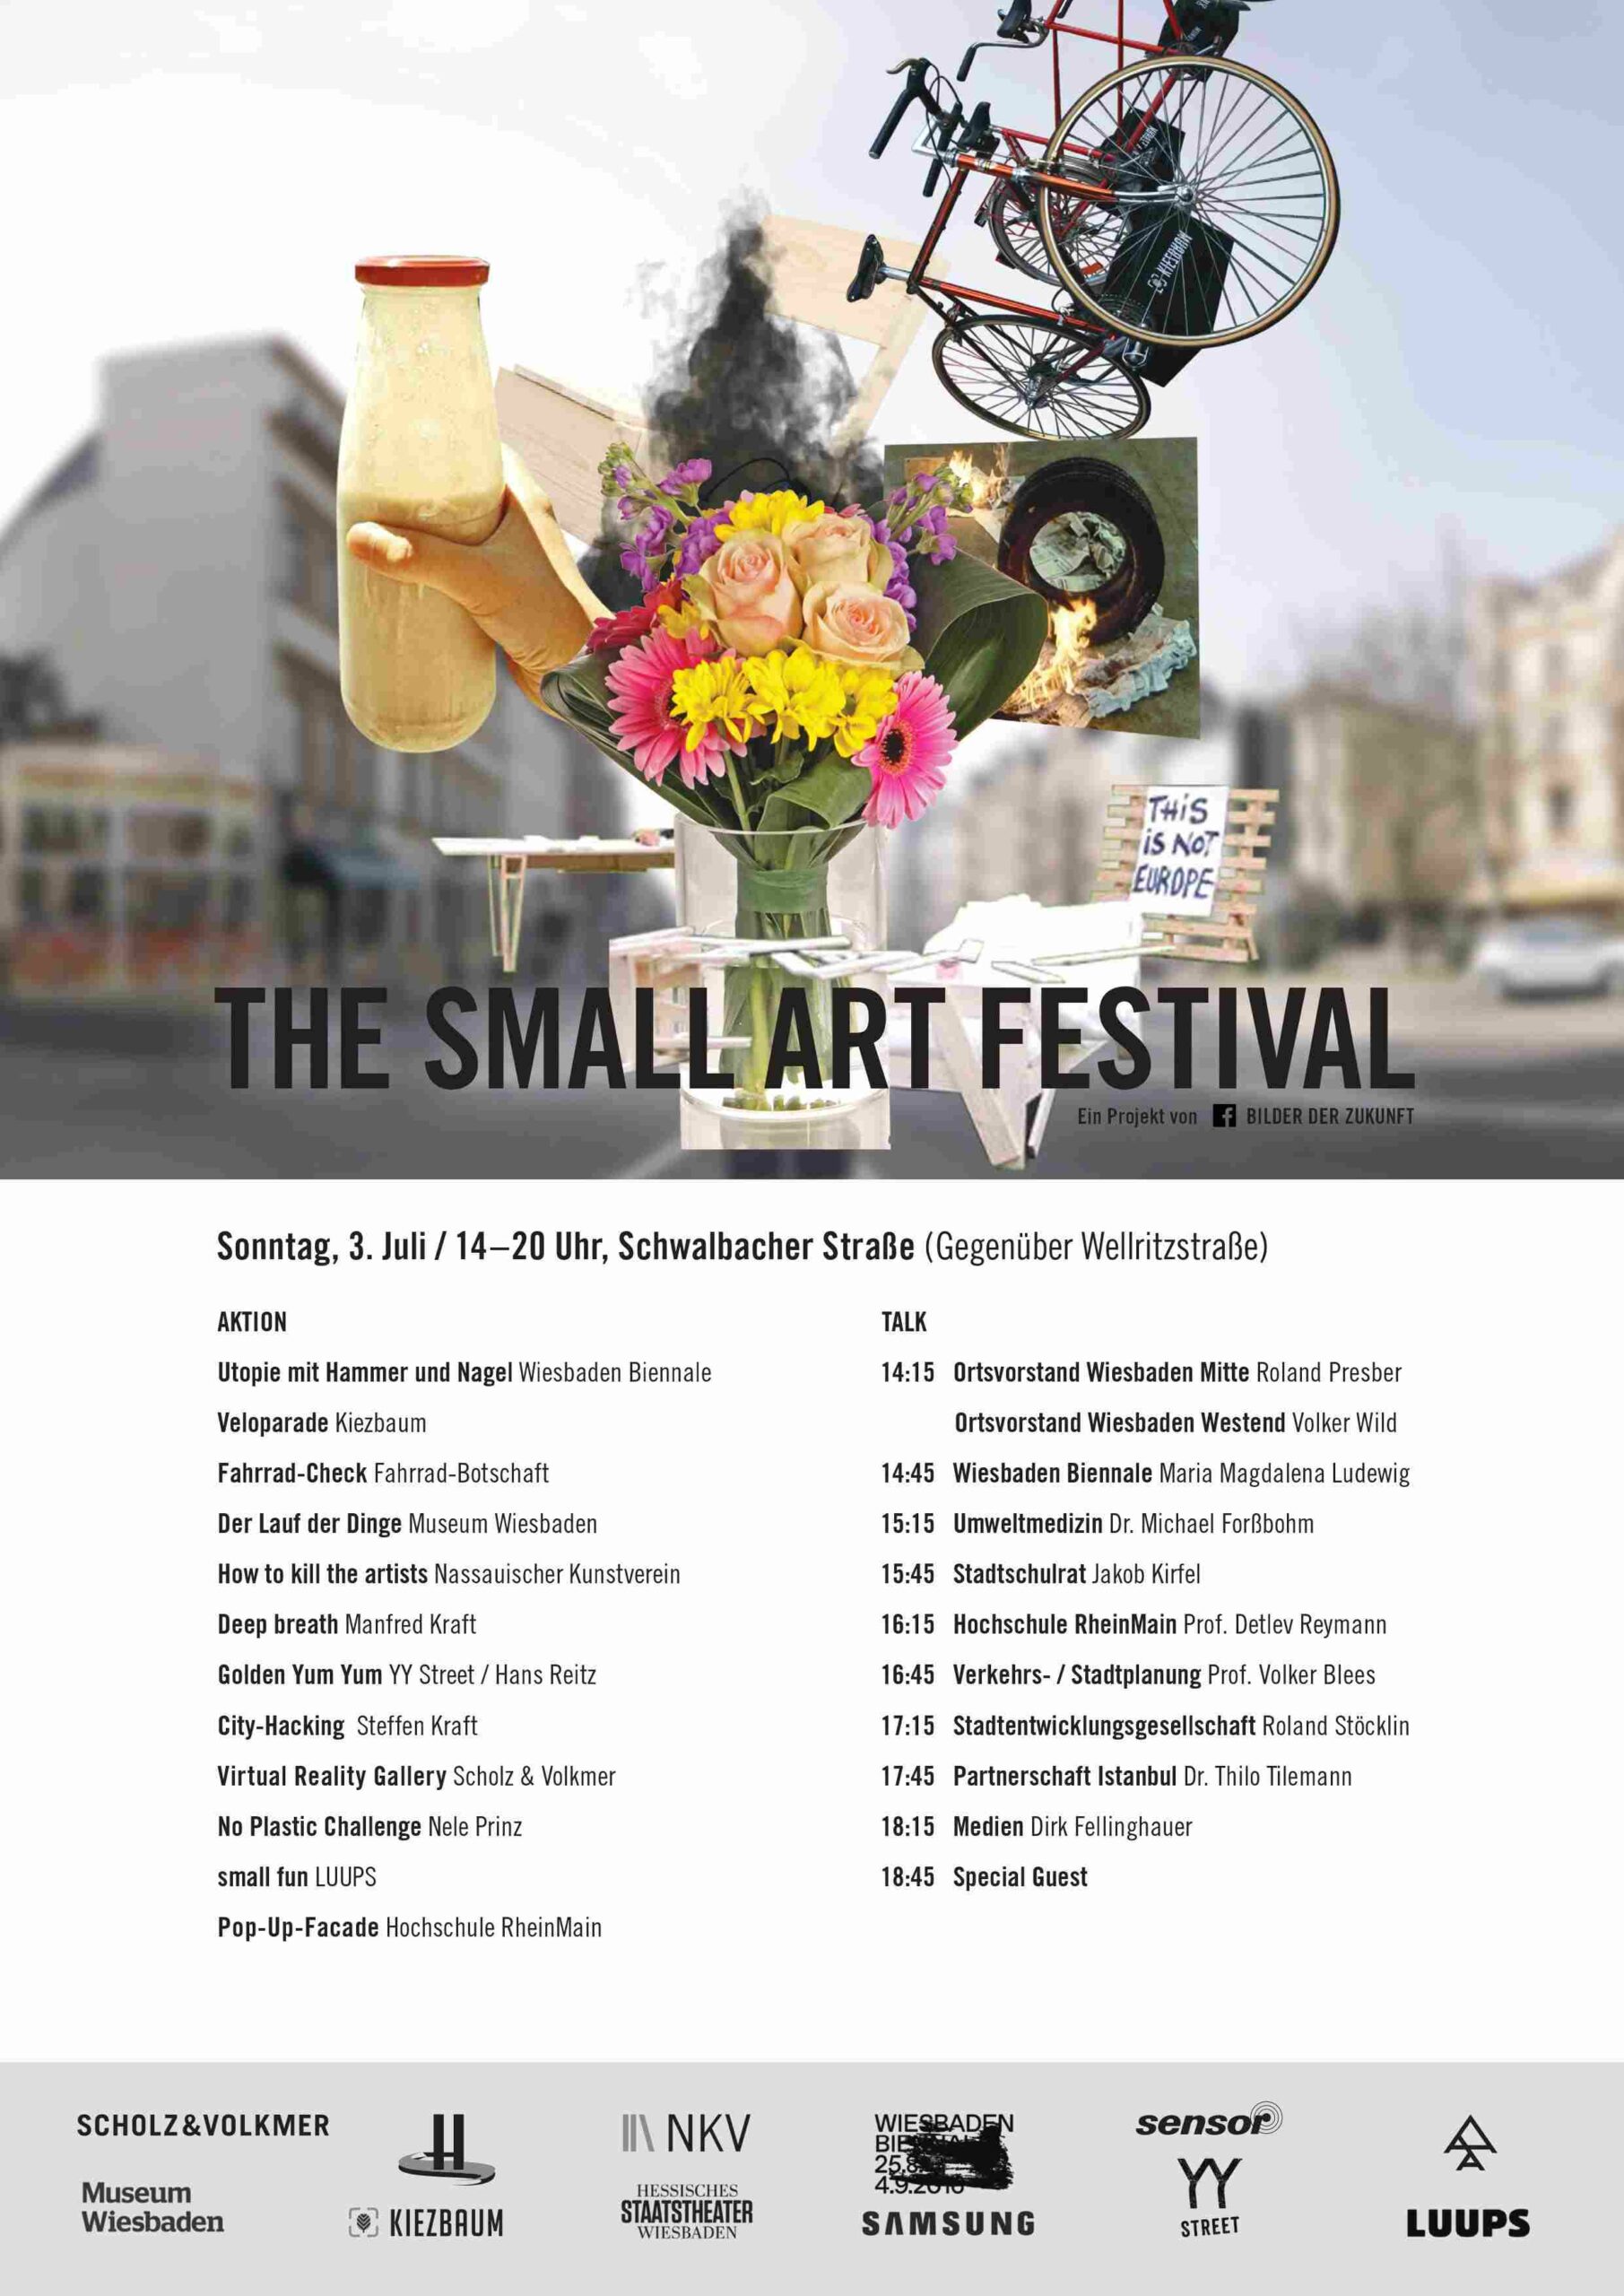 Heute! Schwalbacher Straße! The Small Art Festival und Die 12. Vision – das aktualisierte Programm: